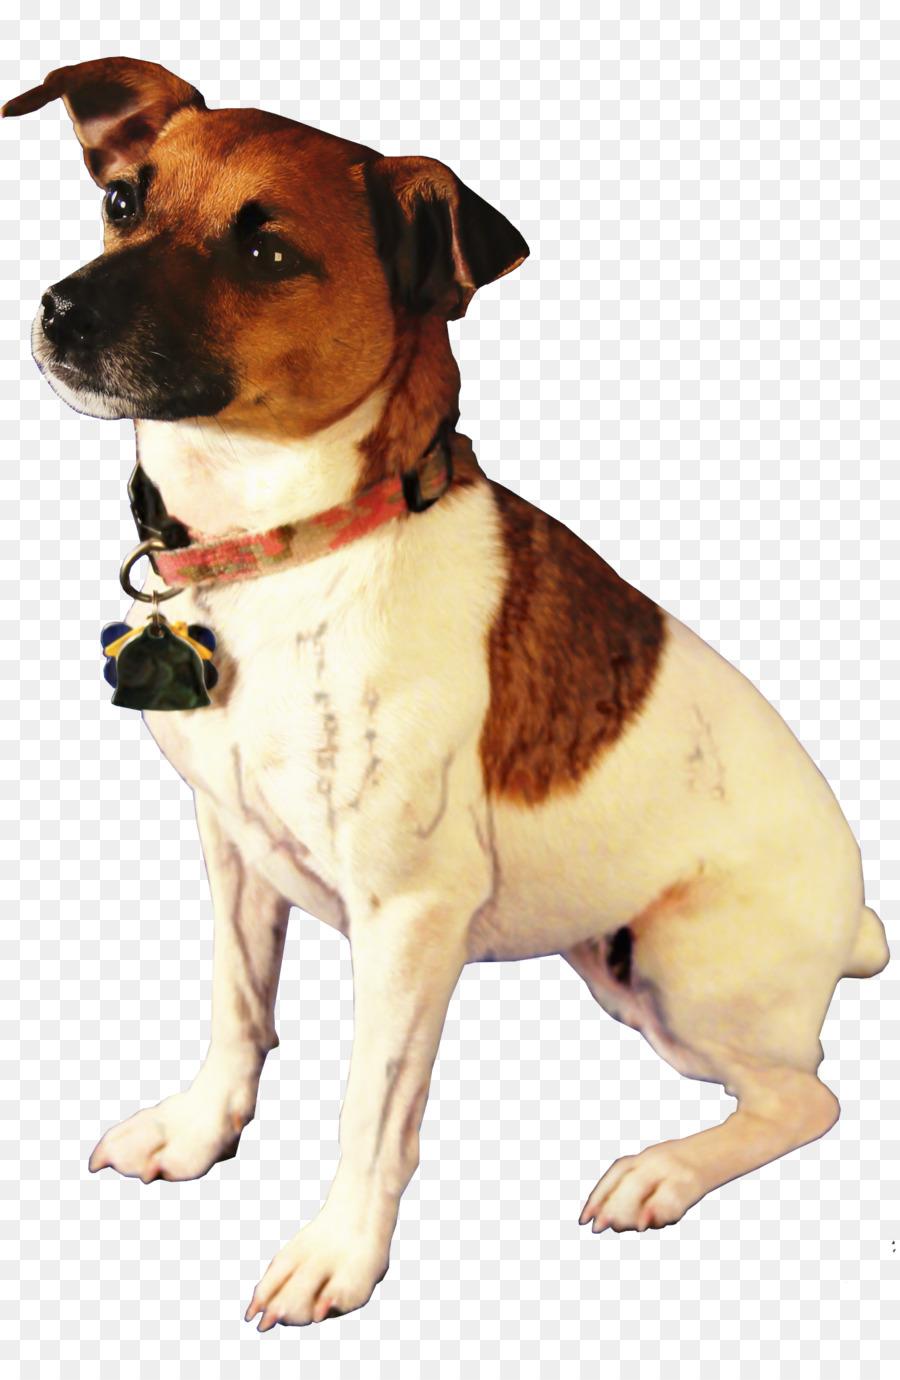 Jack Russell Terrier Parson Russell Terrier Rat Terrier Toy Fox Terrier Plummer Terrier -  png download - 1340*2054 - Free Transparent Jack Russell Terrier png Download.